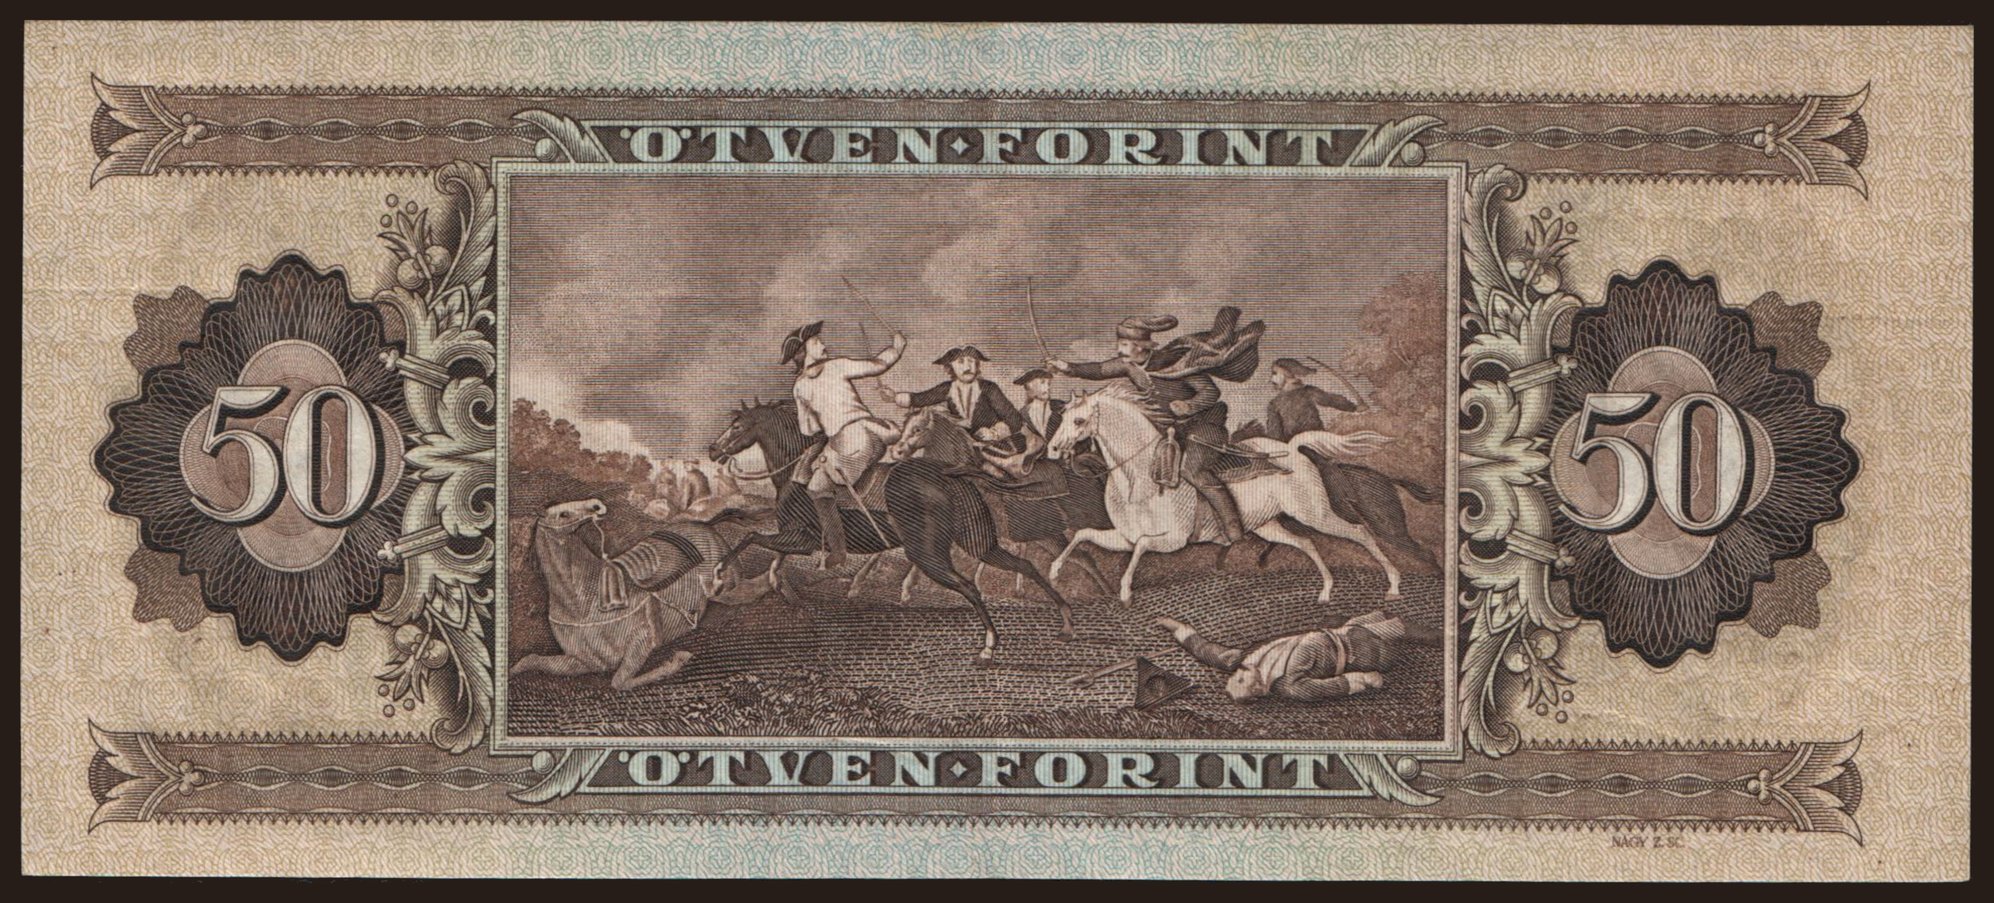 50 forint, 1969 | notafilia-kp.com